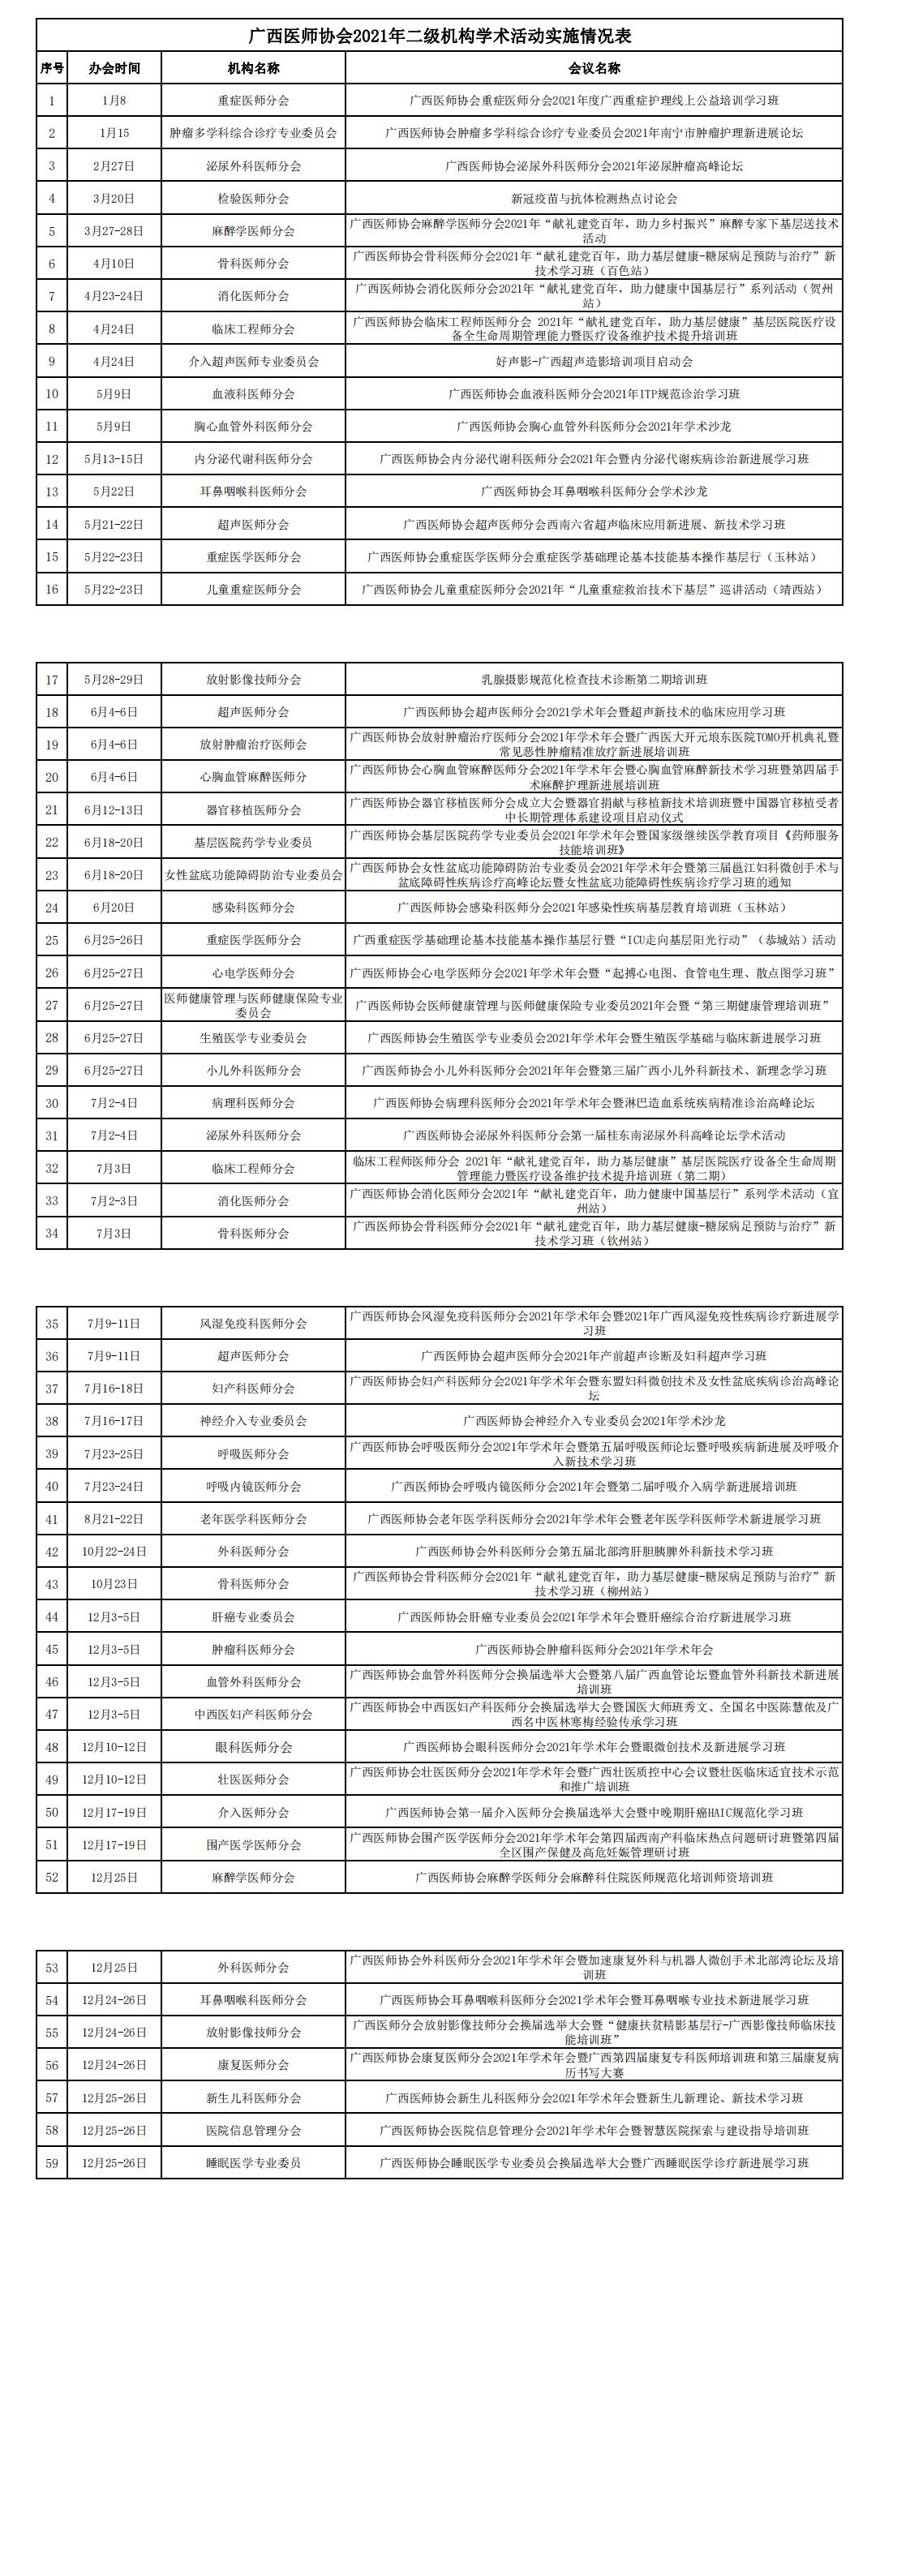 广西医师协会2021年二级机构学术活动实施情况表_00.jpg